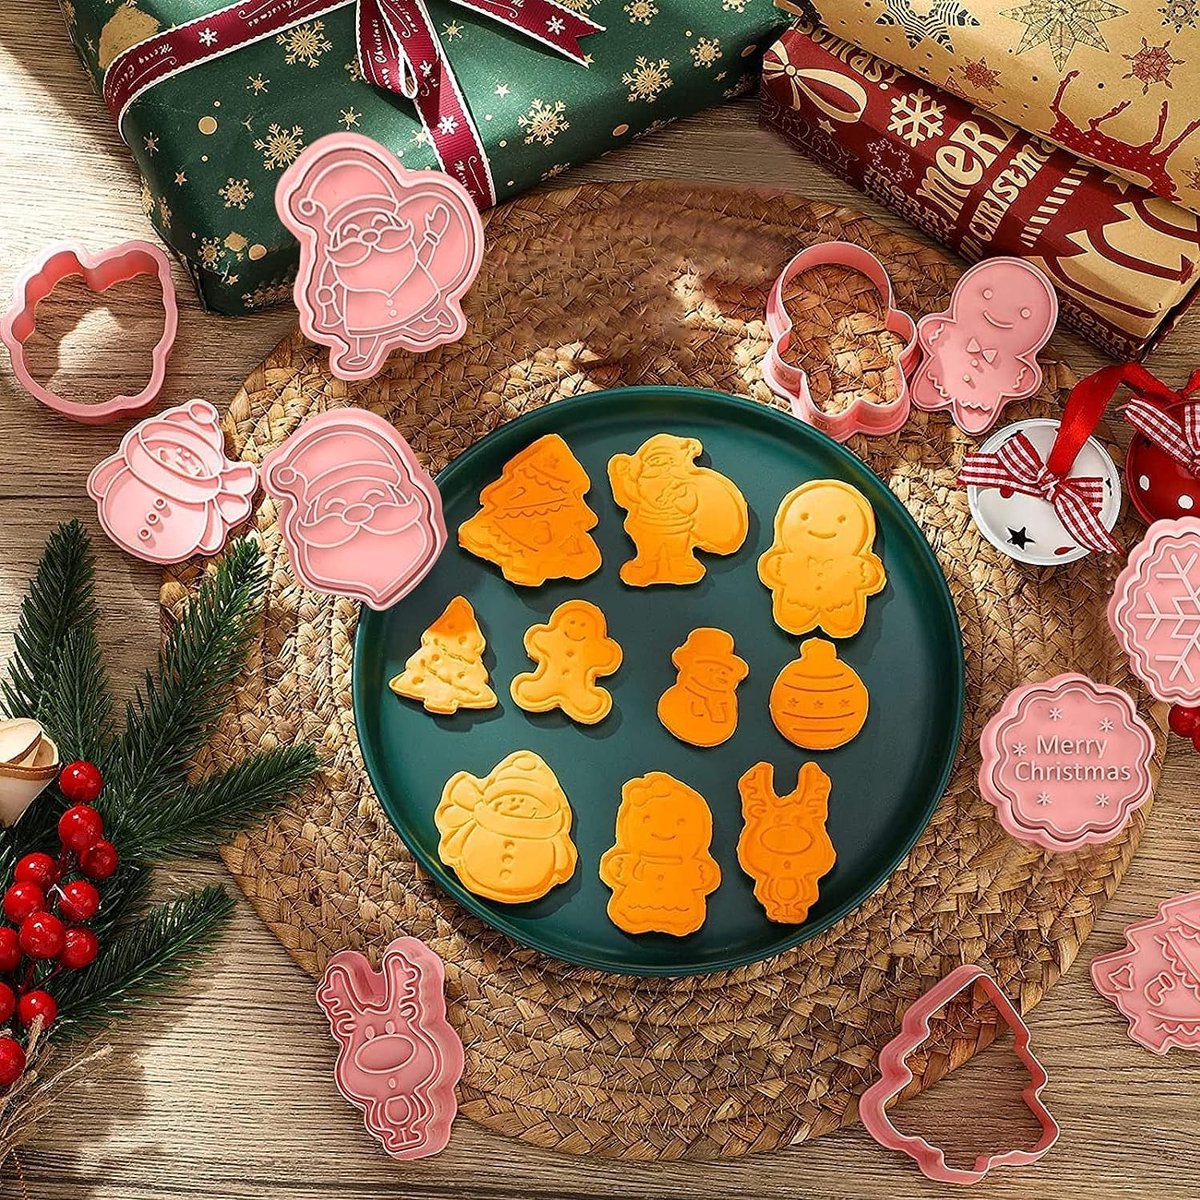 Cookie Cutter voor kinderen, 8 stuks koekjessnijders, koekjesvorm dieren, koekjesvorm, fondant uitsteekvormen, uitsteekvormen voor brood en groenten voor kinderen, sandwich cutter (Kerstmis)